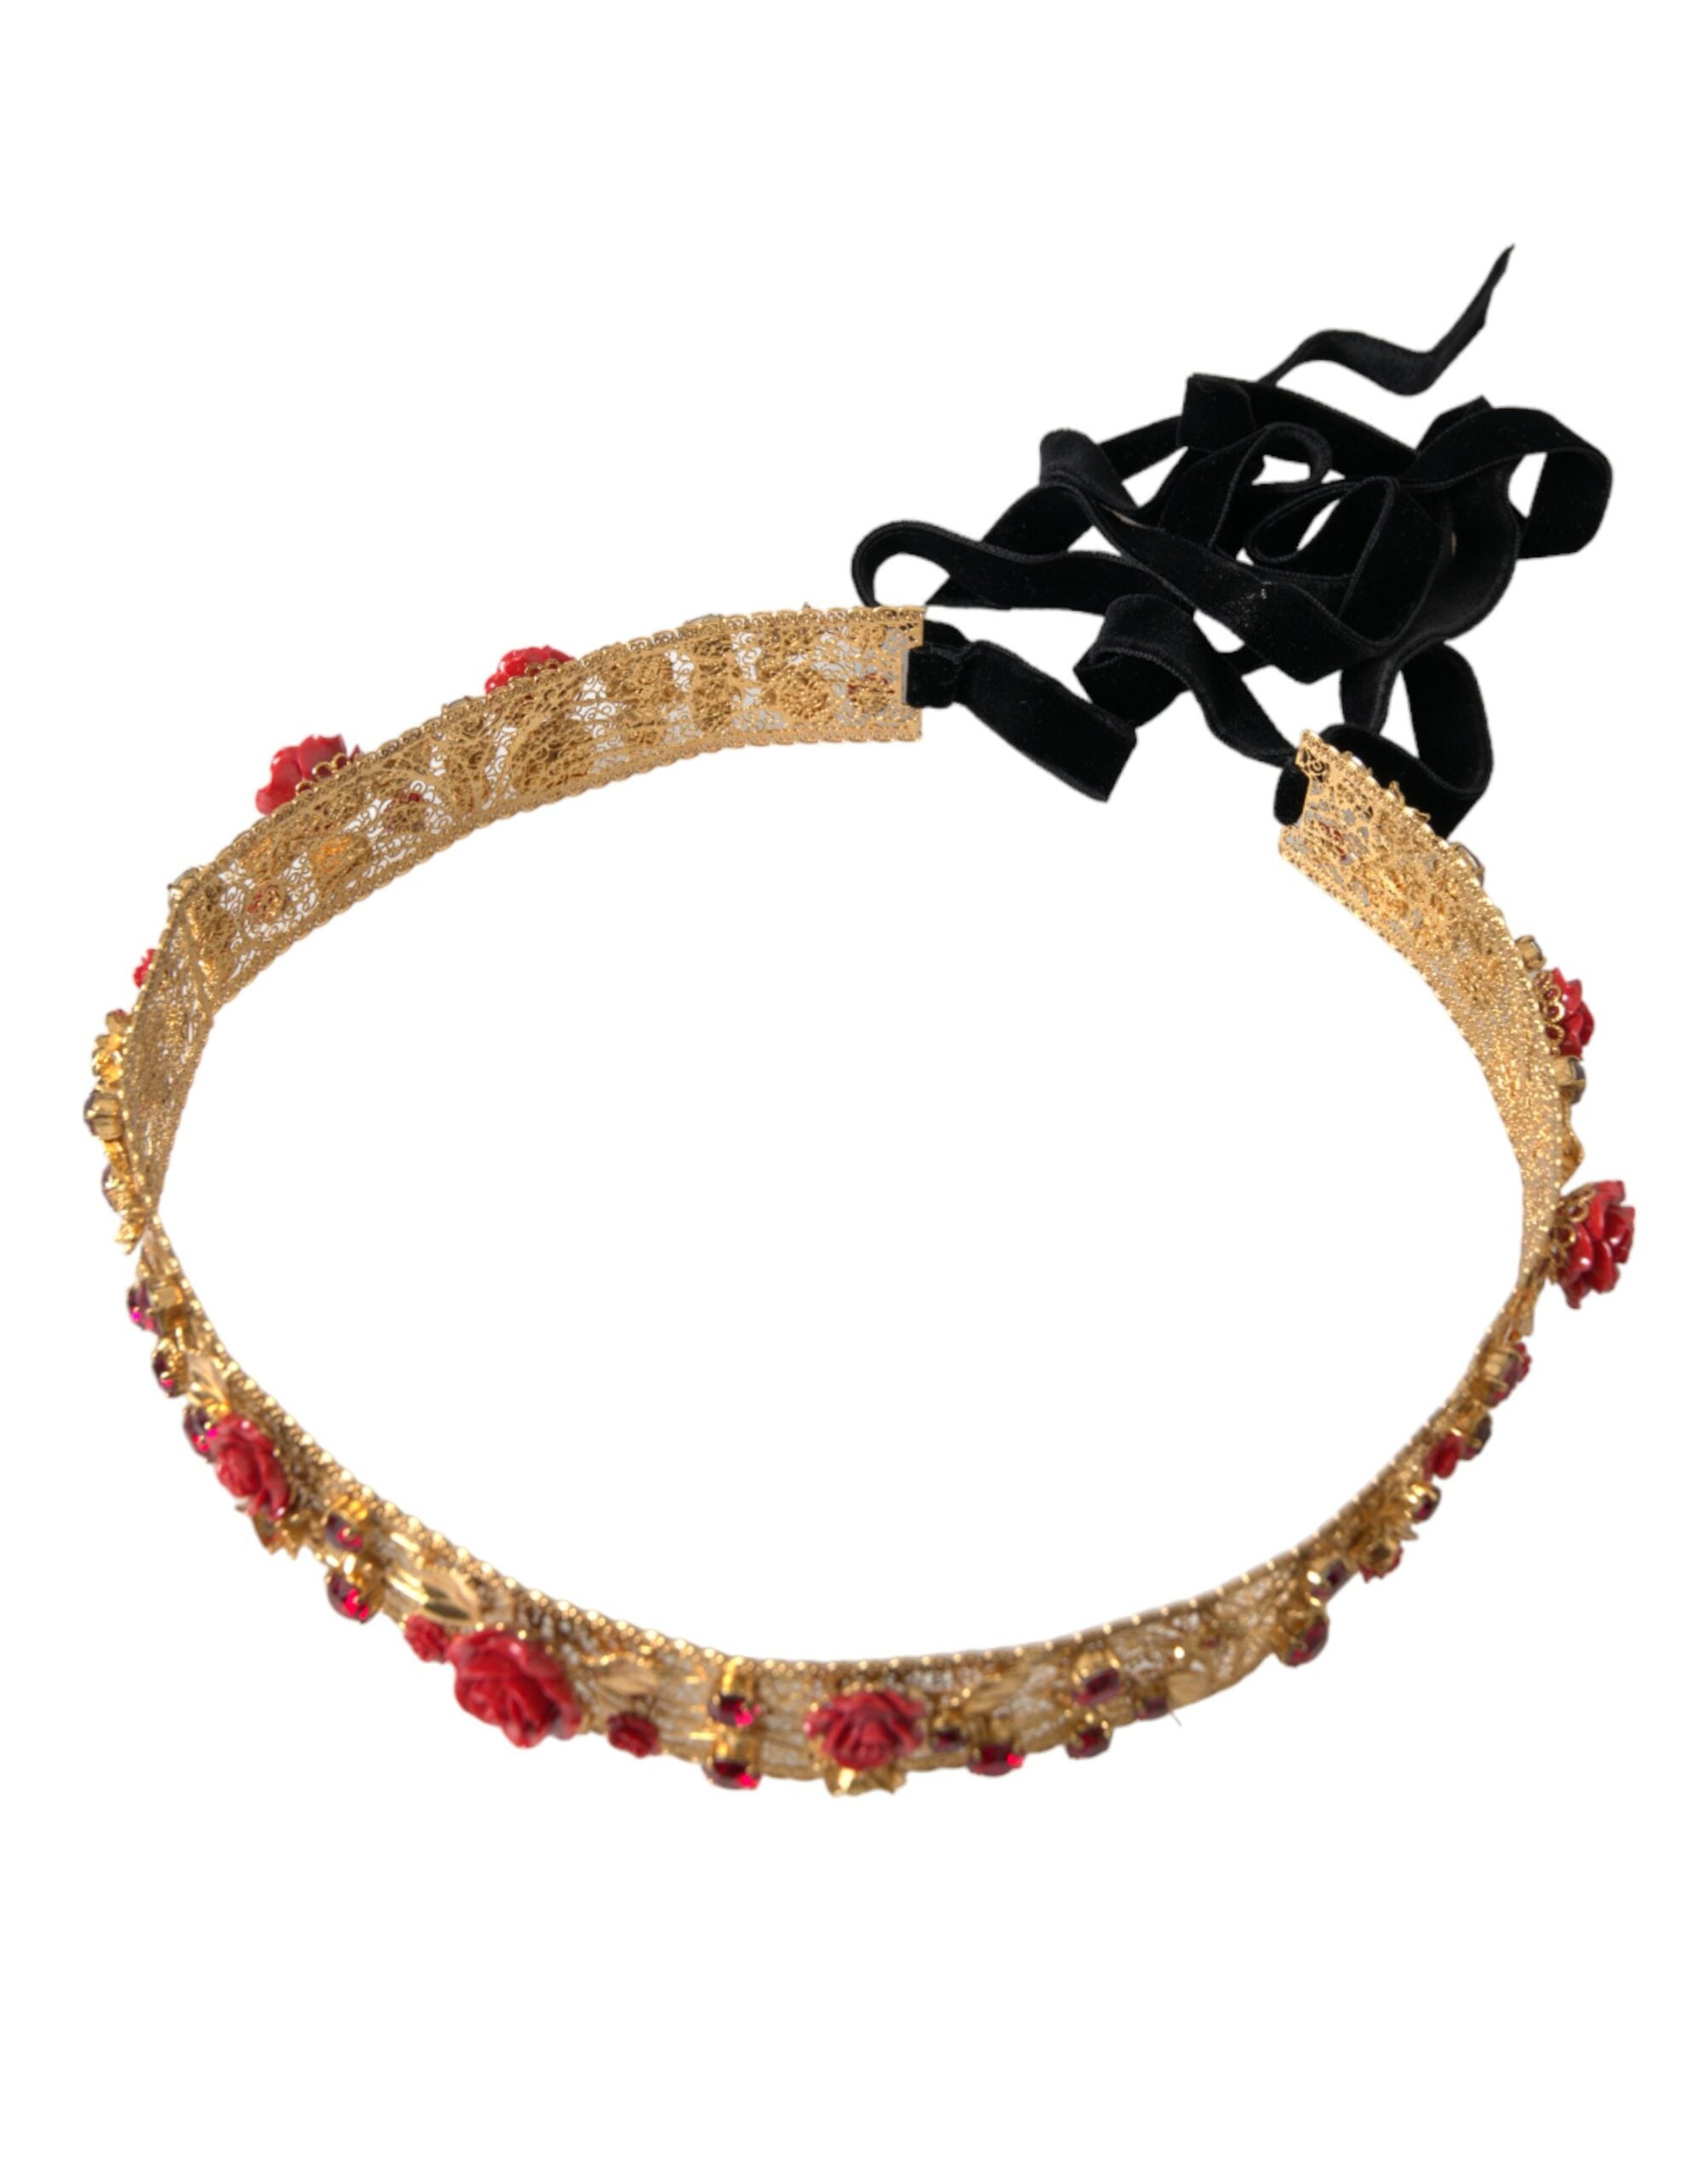 Dolce & Gabbana – Taillengürtel aus goldenem Messing mit roten Rosen und Kristallsteinen